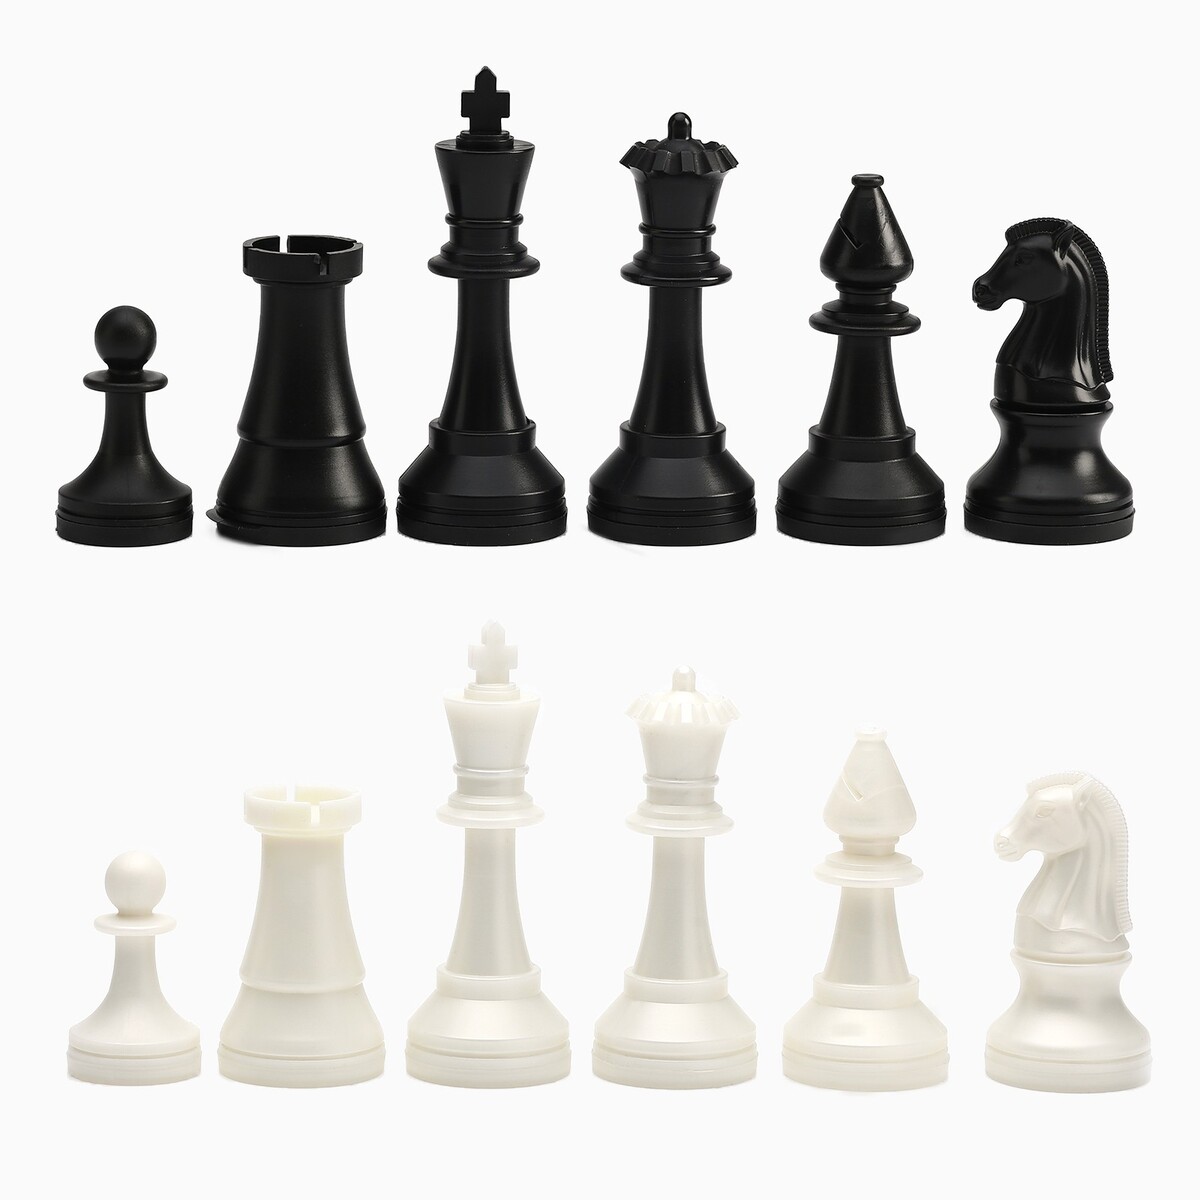 Шахматные фигуры турнирные, пластик, король h-10.5 см, пешка h-5 см шахматные фигуры обиходные король h 7 см d 2 4 см пешка h 4 4 см d 2 4 см